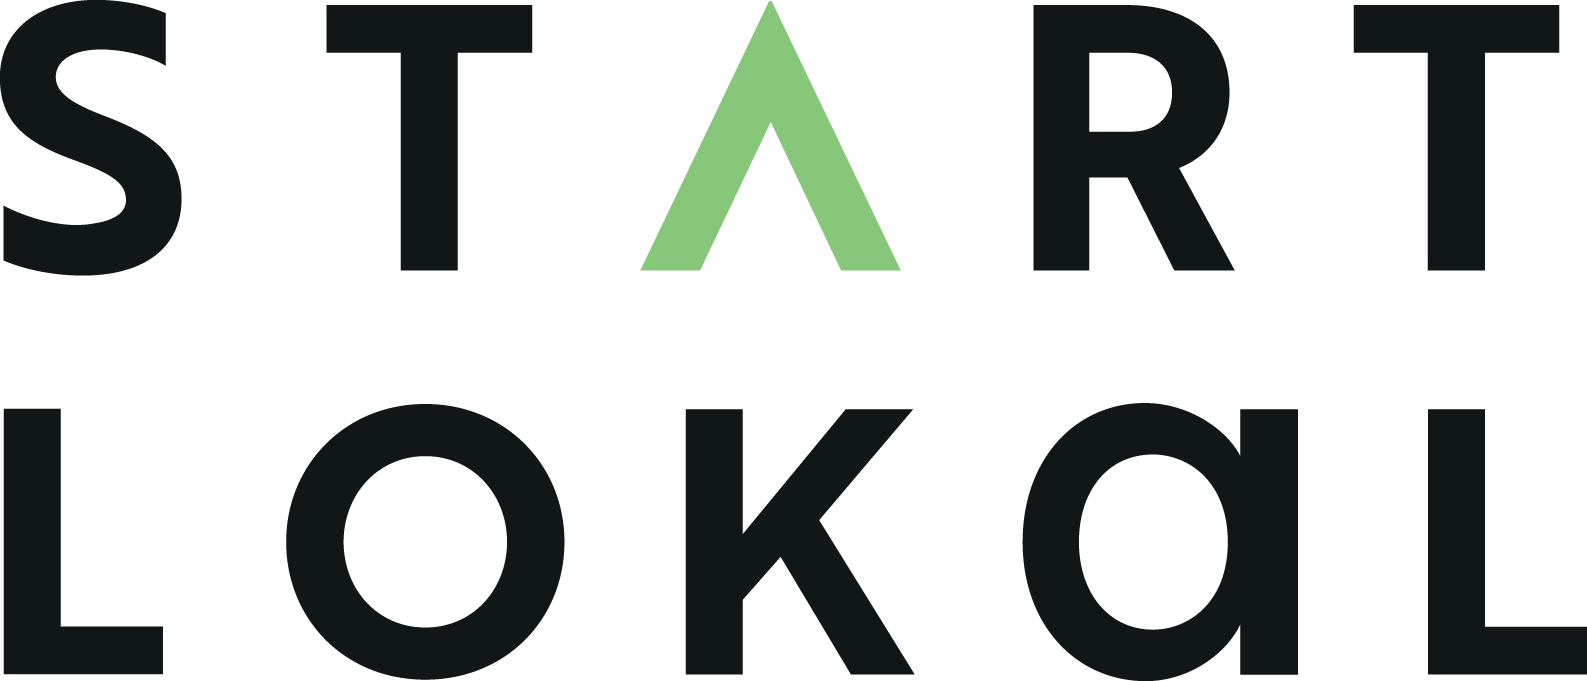 Startlokal logo